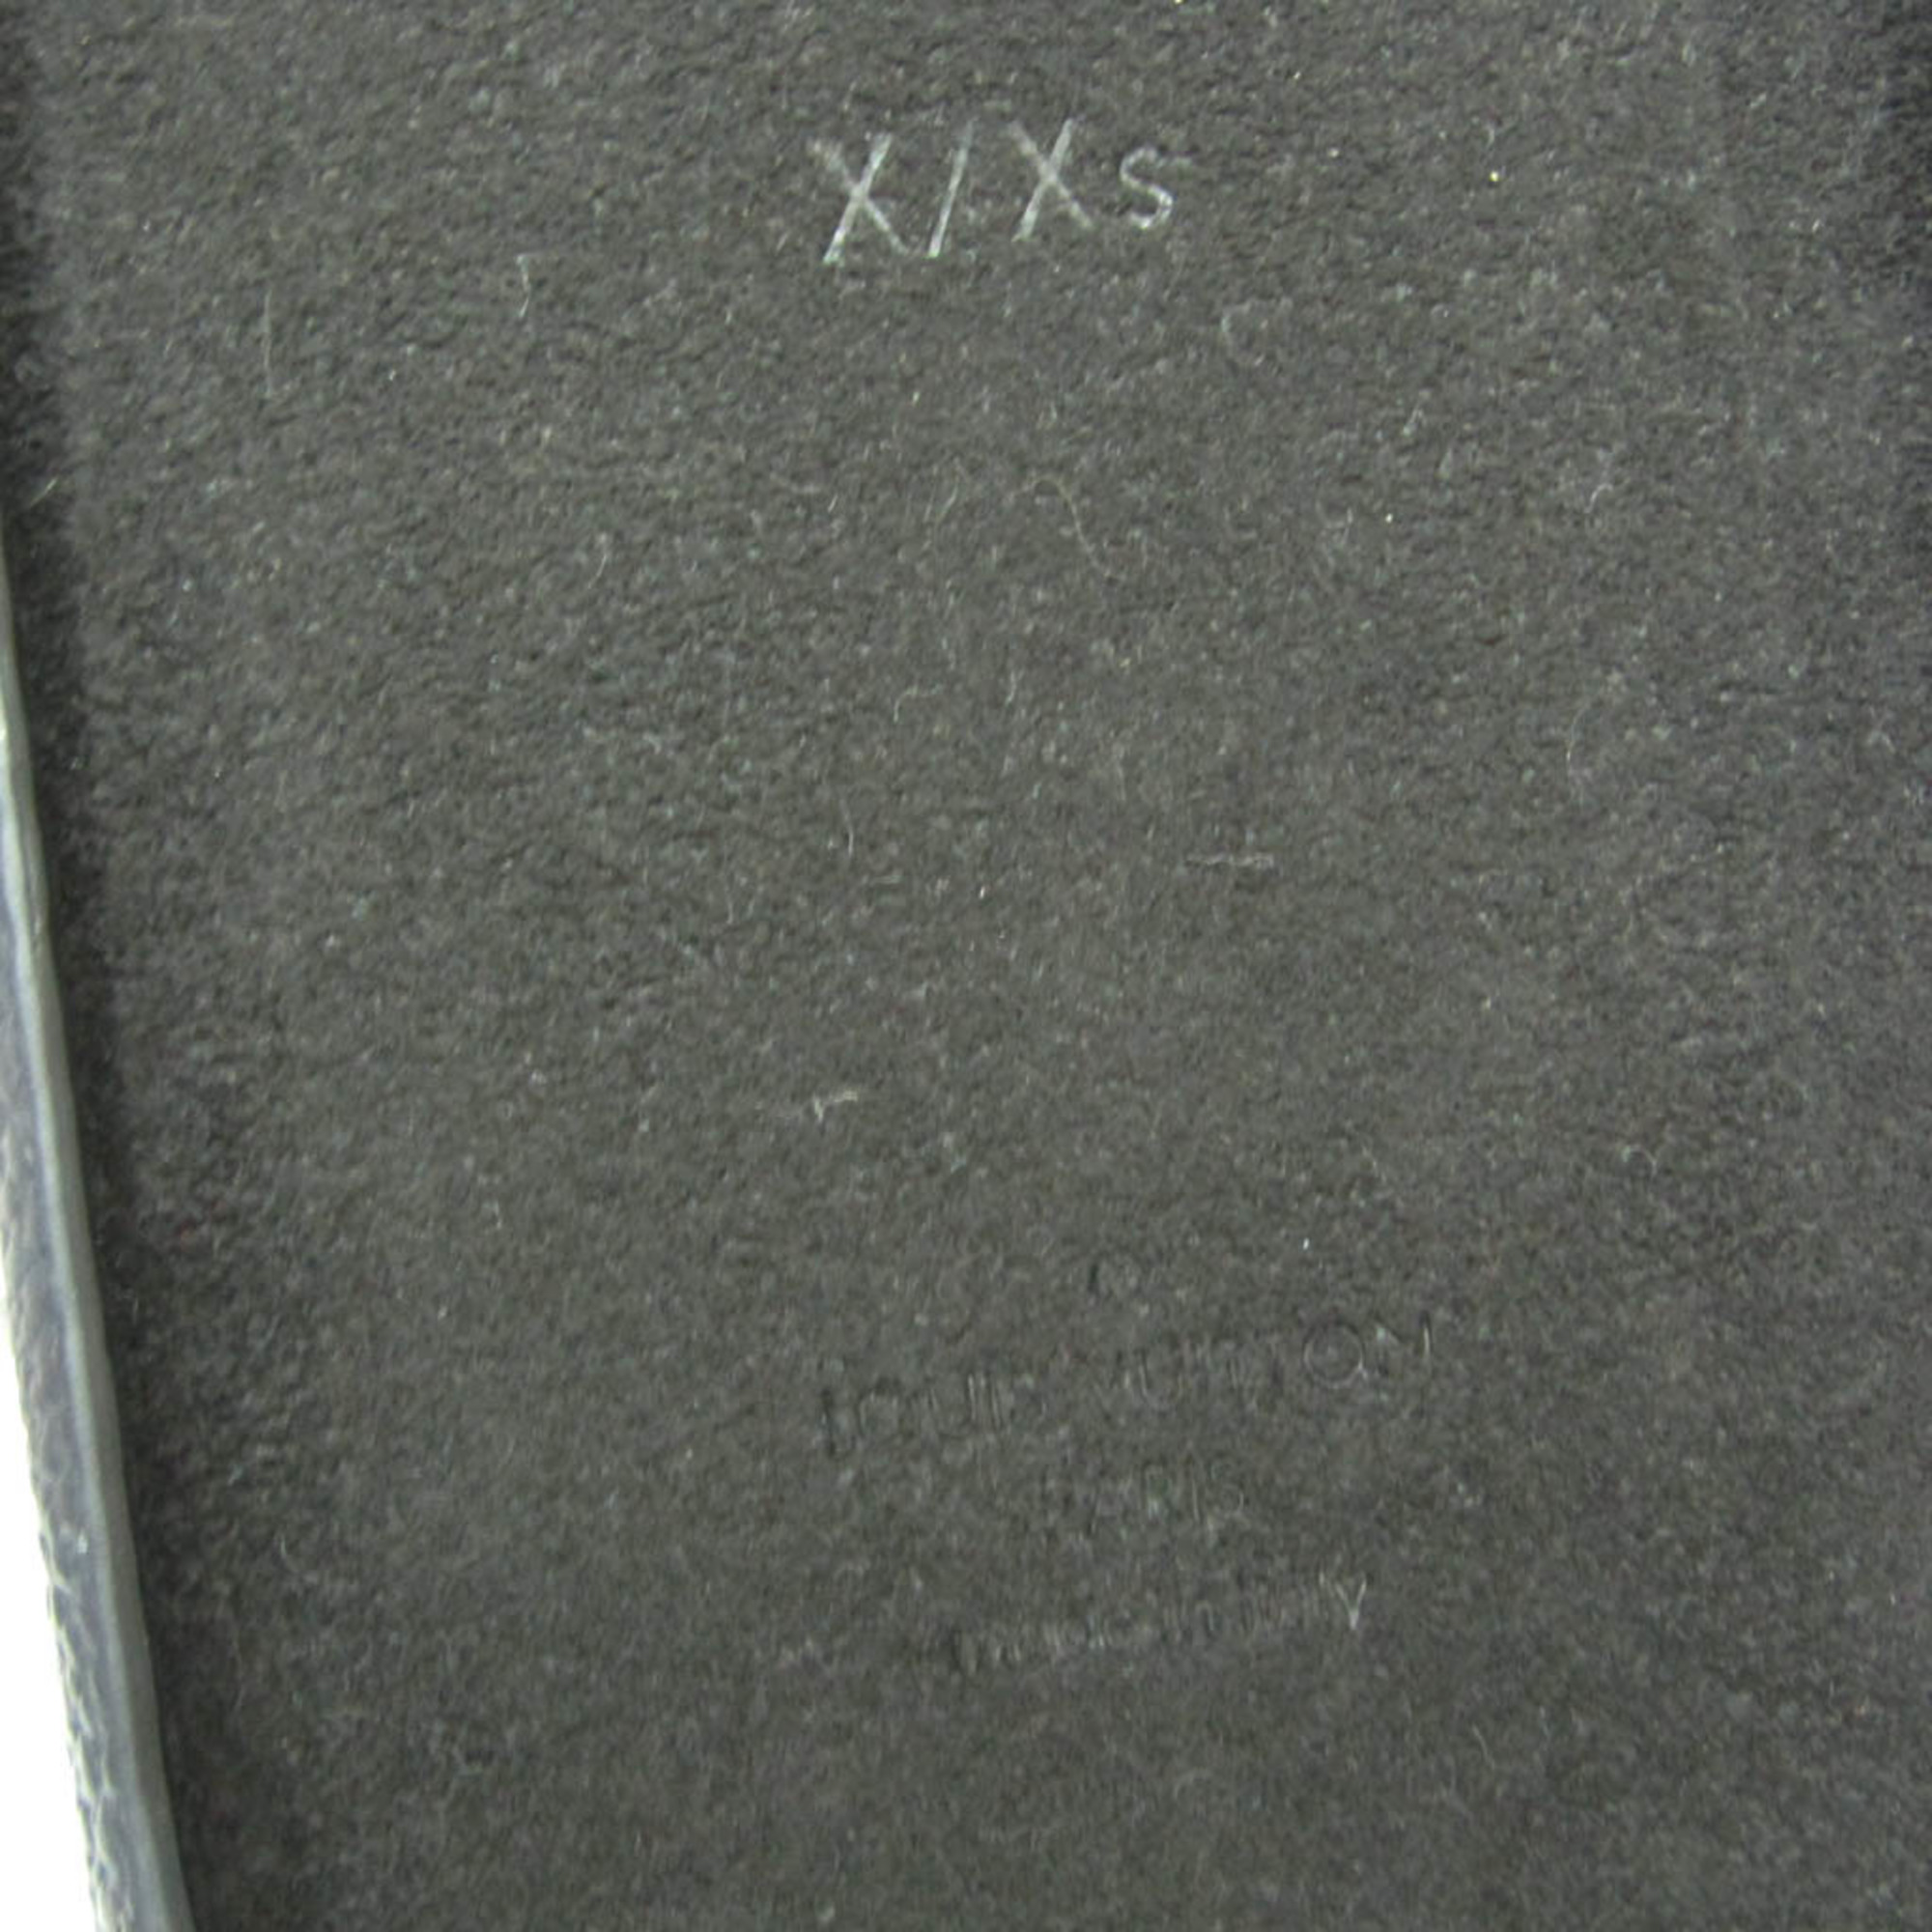 Louis Vuitton Monogram Monogram Phone Bumper For IPhone X Monogram,Noir PHONE bumper X / XS M68893